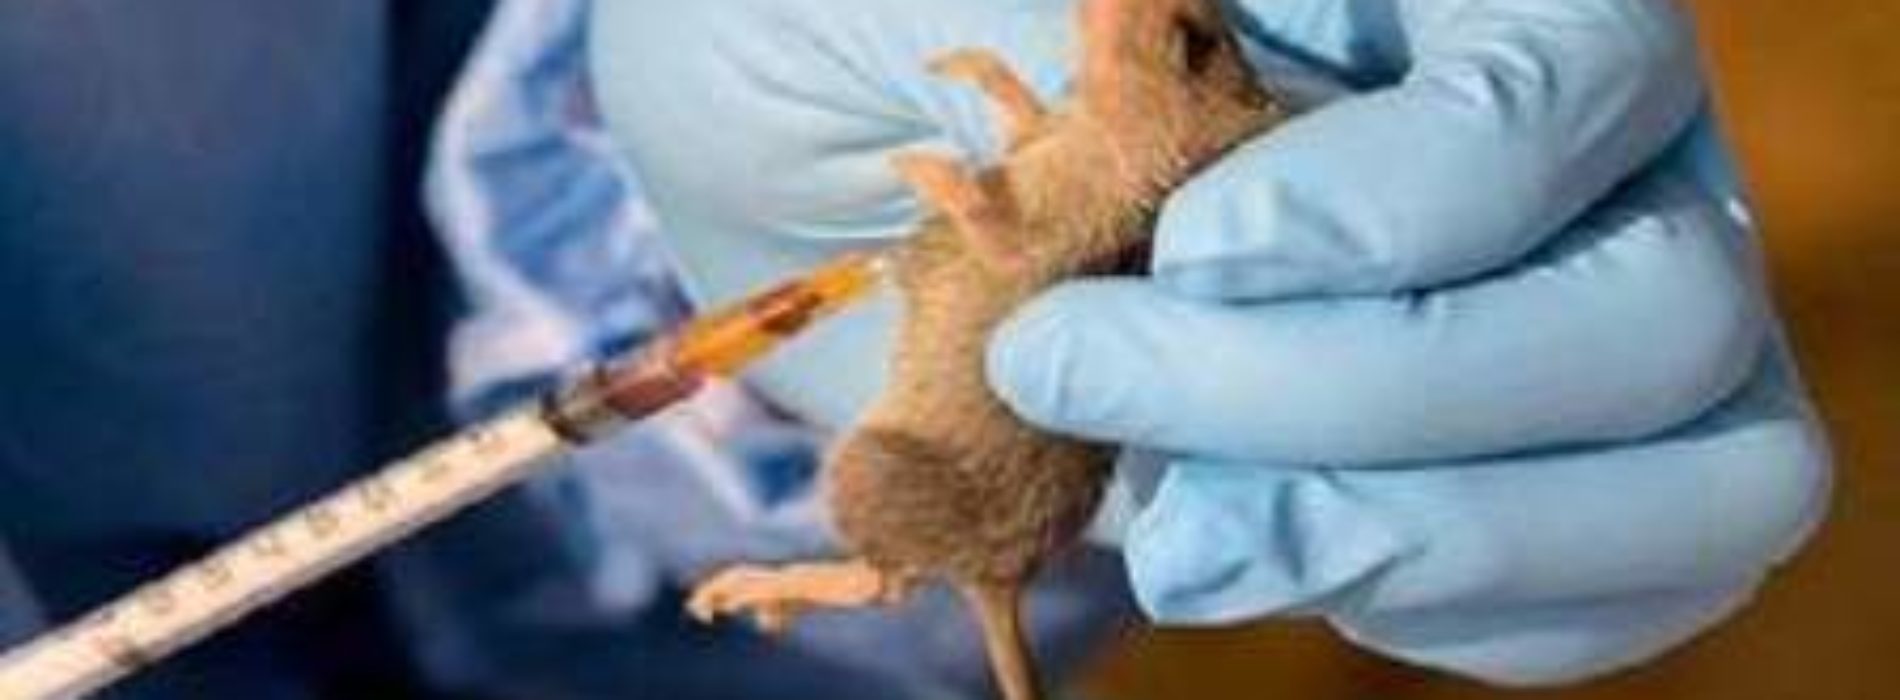 Lassa fever death toll rises